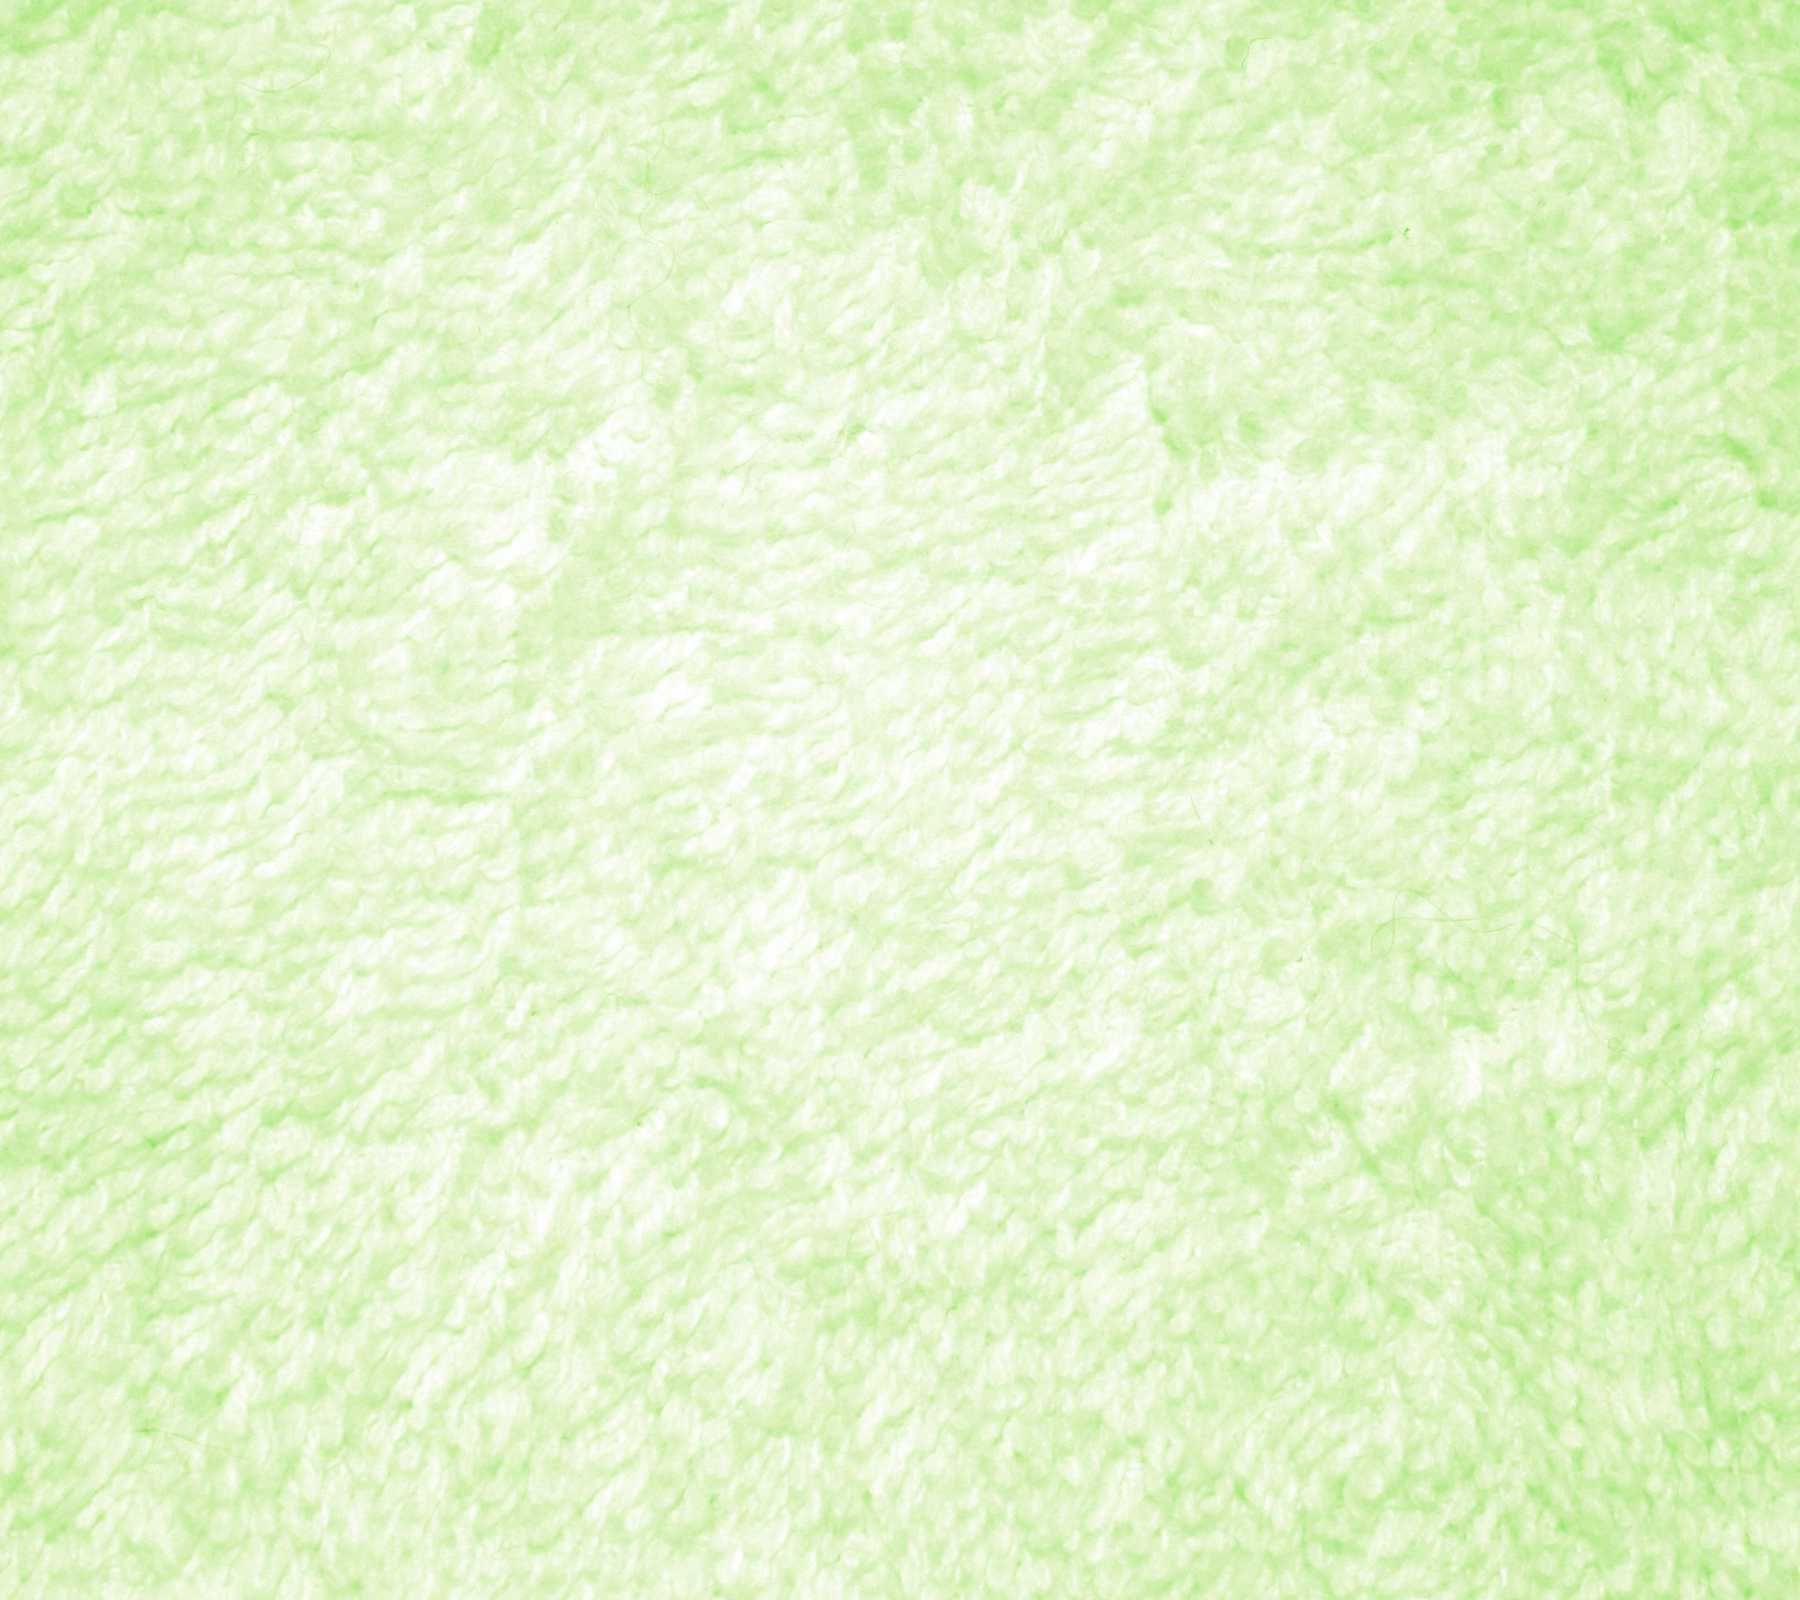 خاص ترین بک گراند بافت سبز کم رنگ با زمینه سفید برای لپ تاپ